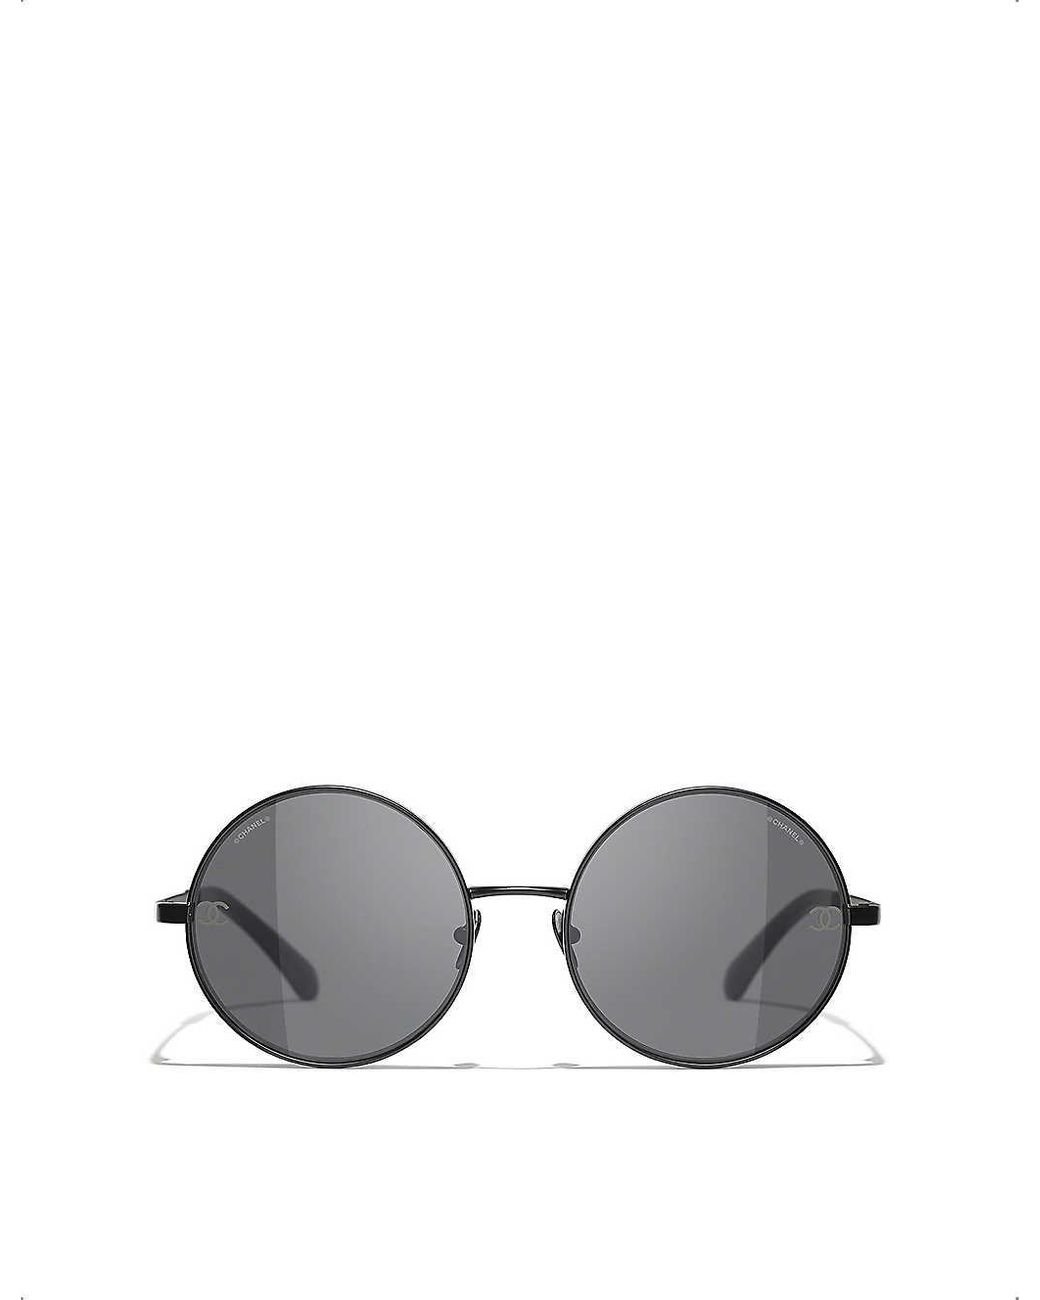 Sunglasses Chanel Black in Plastic - 21667326